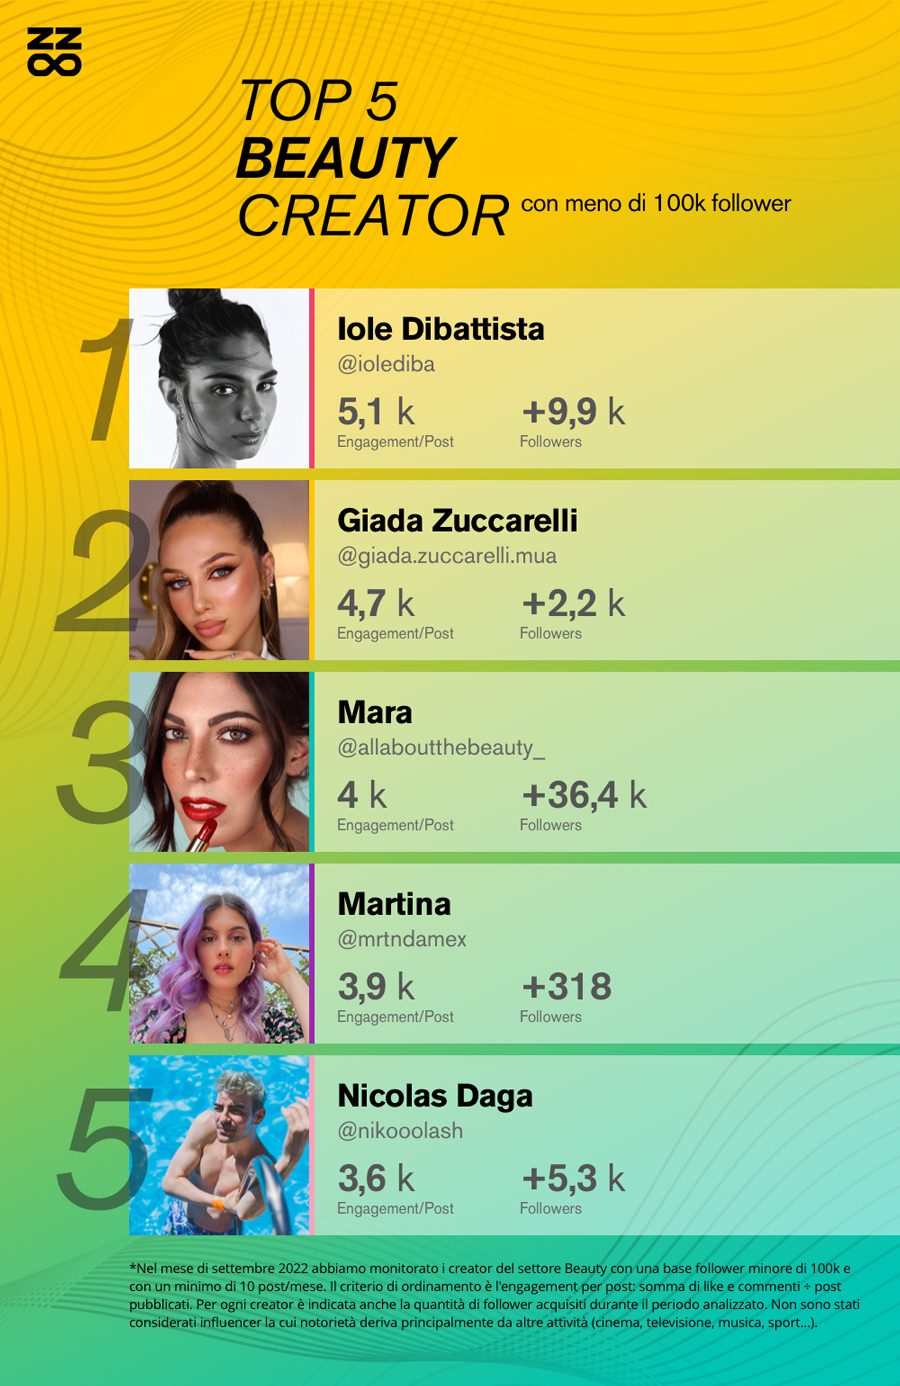 Classifica 2022 dei migliori beauty Influencer italiani con meno di 100 mila follower su Instagram:
1) @iolediba
2) @giada.zuccarelli.mua
3) @allaboutthebeauty_
4) @mrtndamex
5) @nikooolash